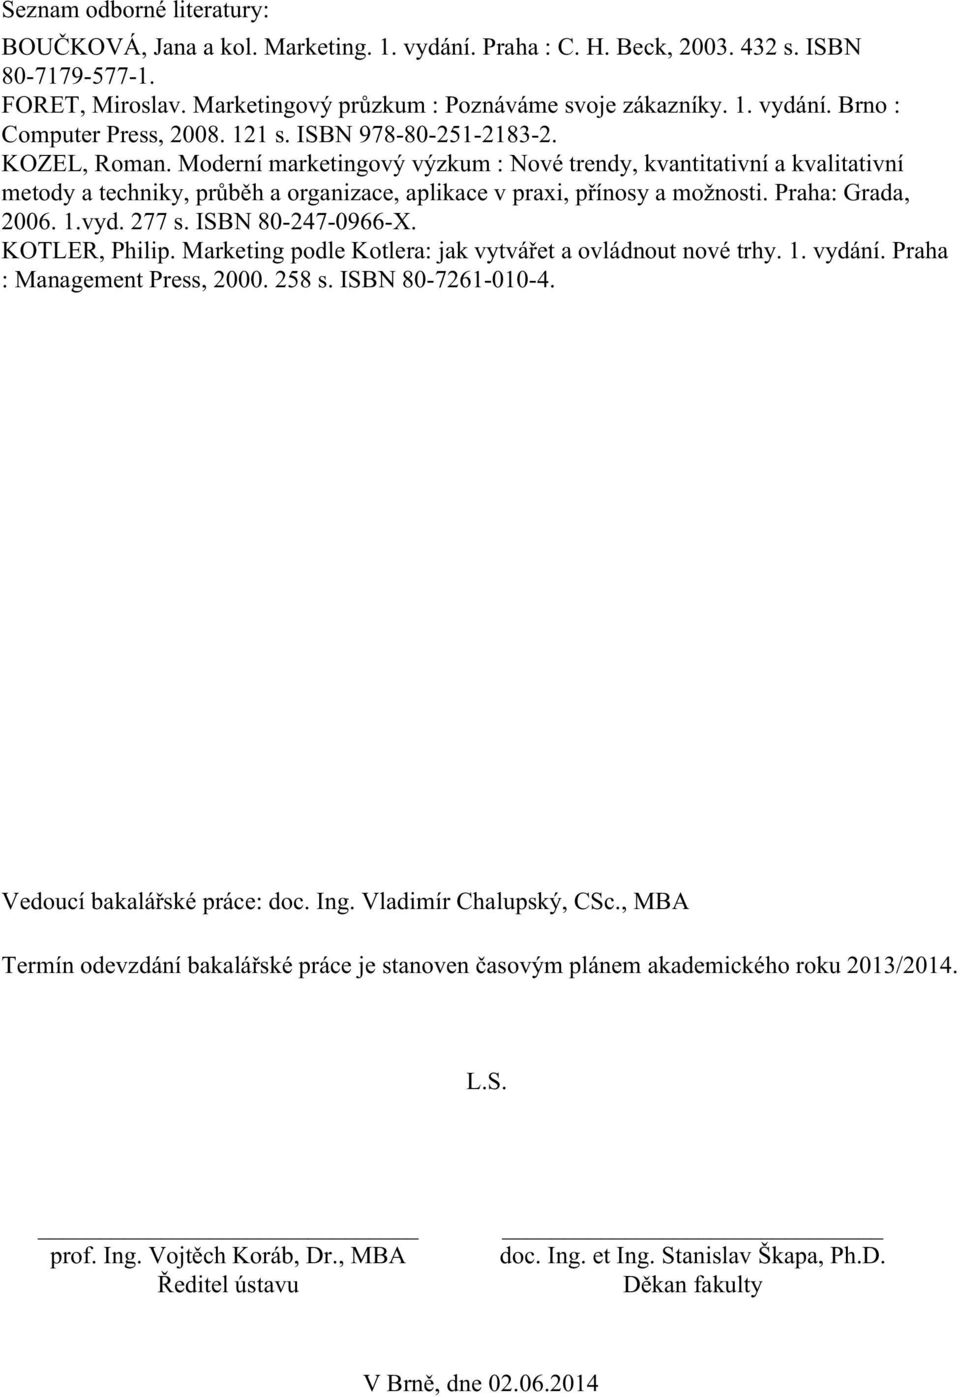 Praha: Grada, 2006. 1.vyd. 277 s. ISBN 80-247-0966-X. KOTLER, Philip. Marketing podle Kotlera: jak vytvářet a ovládnout nové trhy. 1. vydání. Praha : Management Press, 2000. 258 s. ISBN 80-7261-010-4.